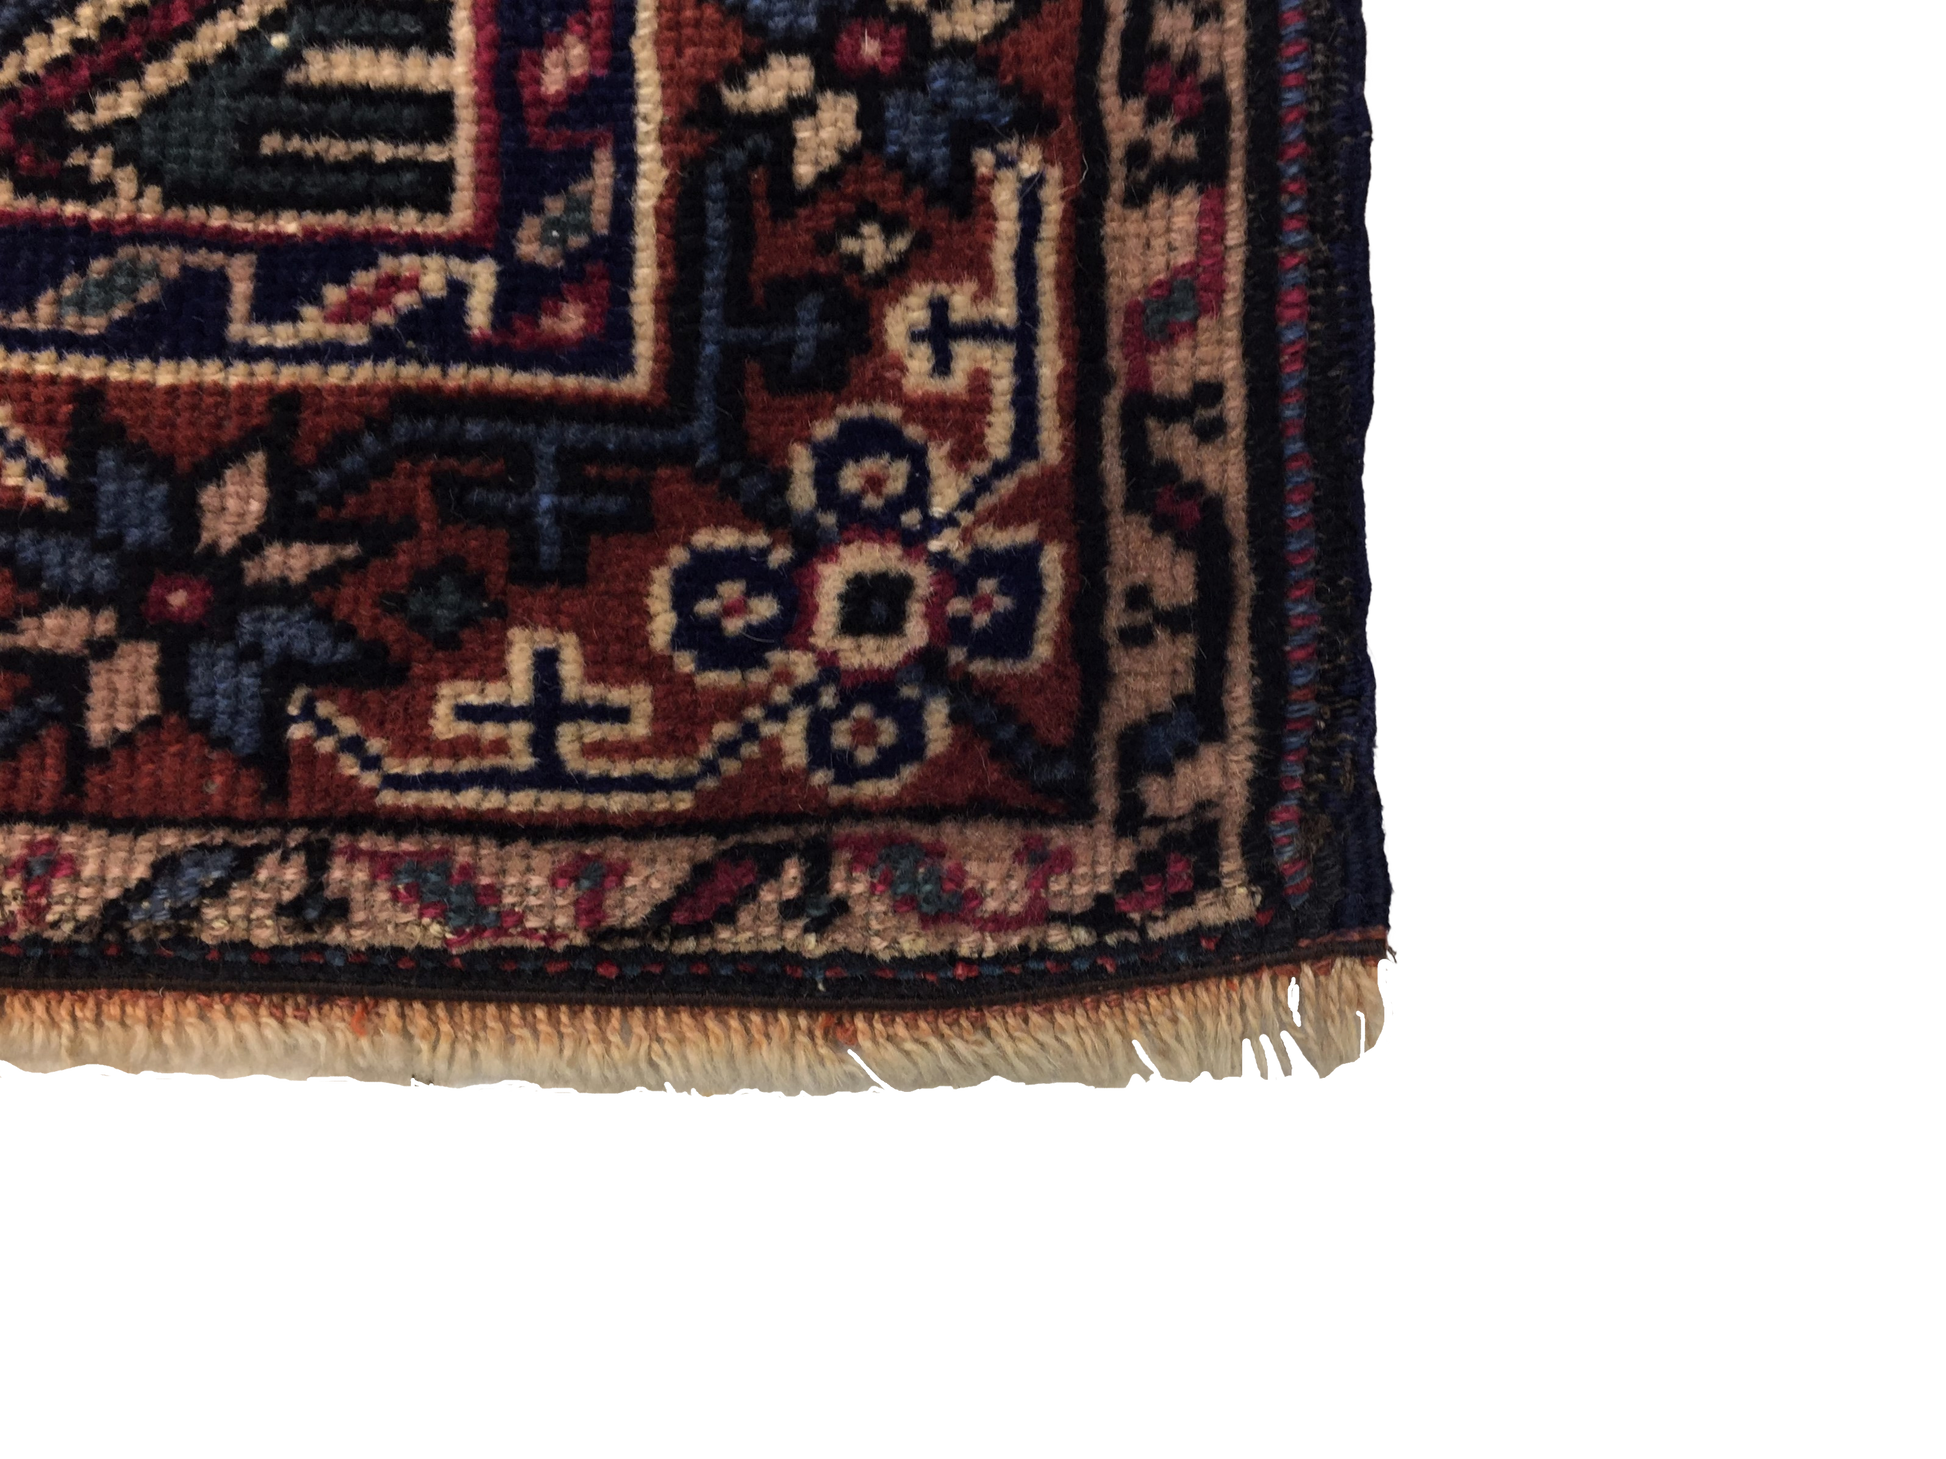 Classic Carpet 89 X 153 cm - Alfombras de Estambul -  Turkish Carpets - Alfombras de Estambul